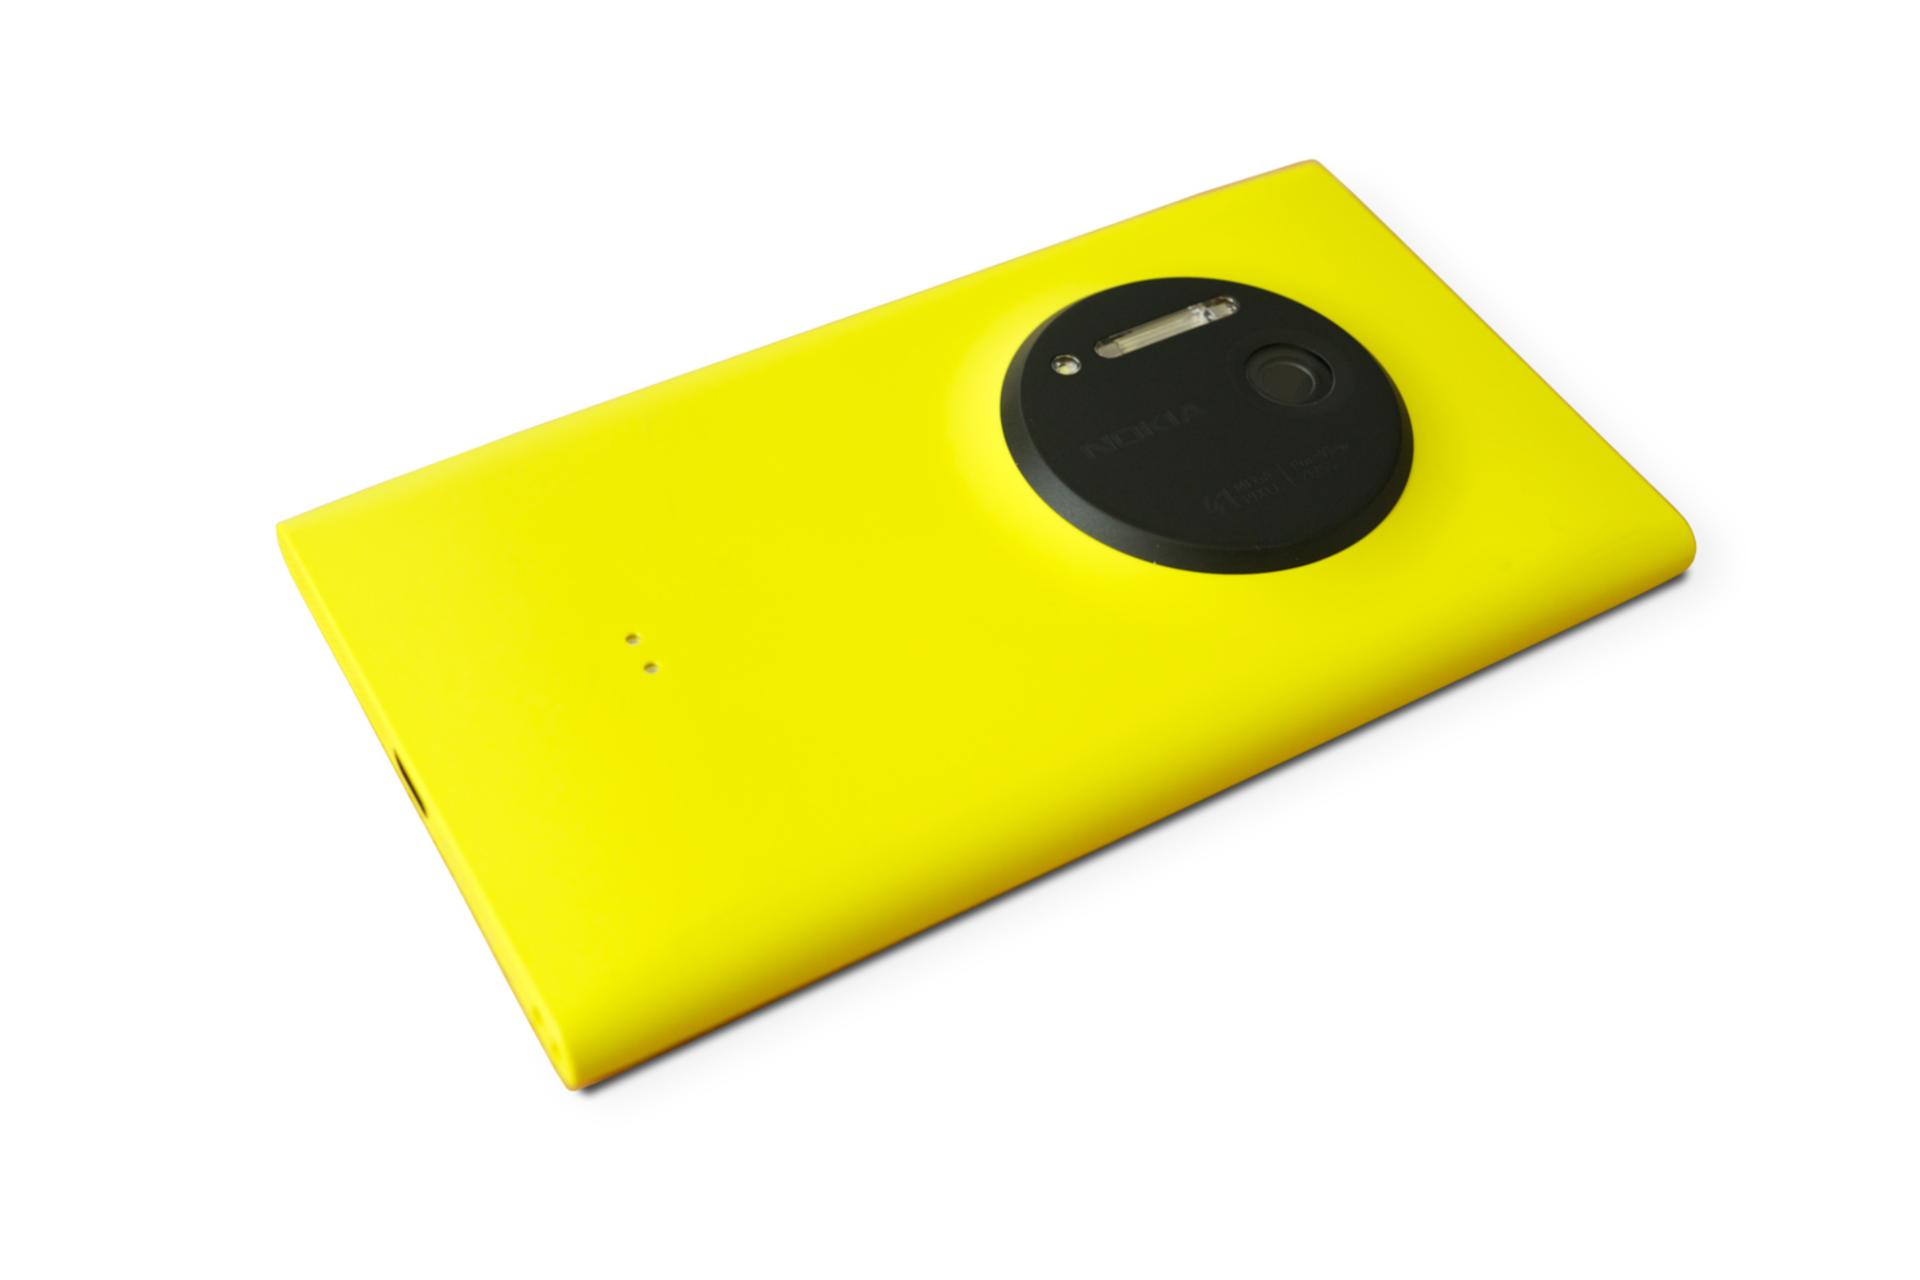 موبایل نوکیا لومیا 1020 زرد